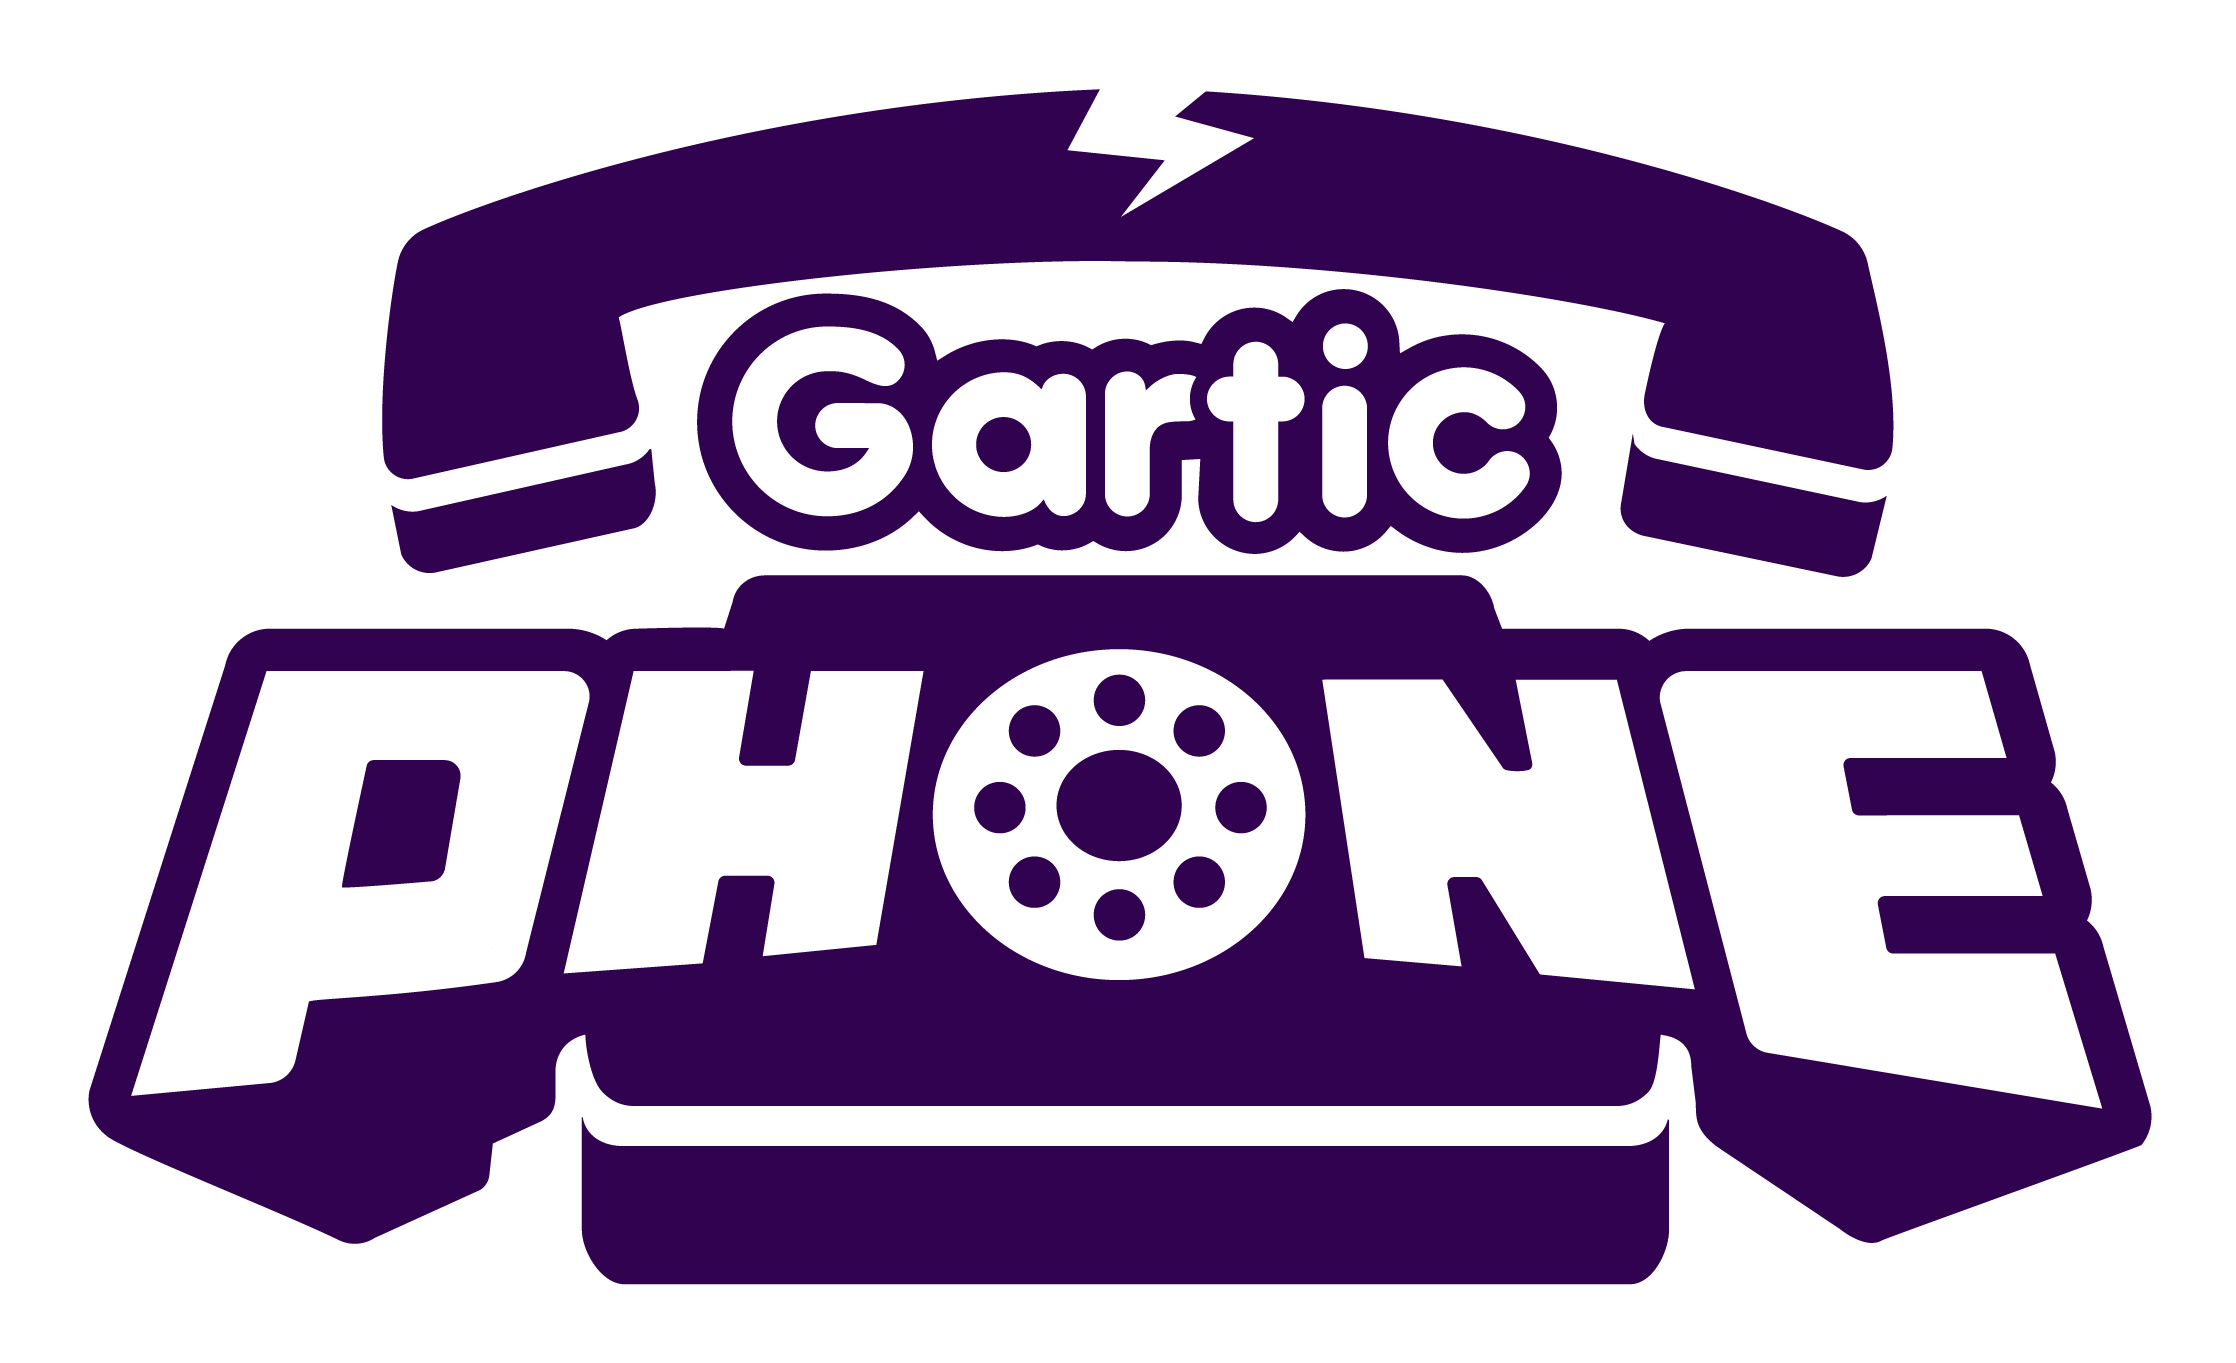 Gartic phone steam